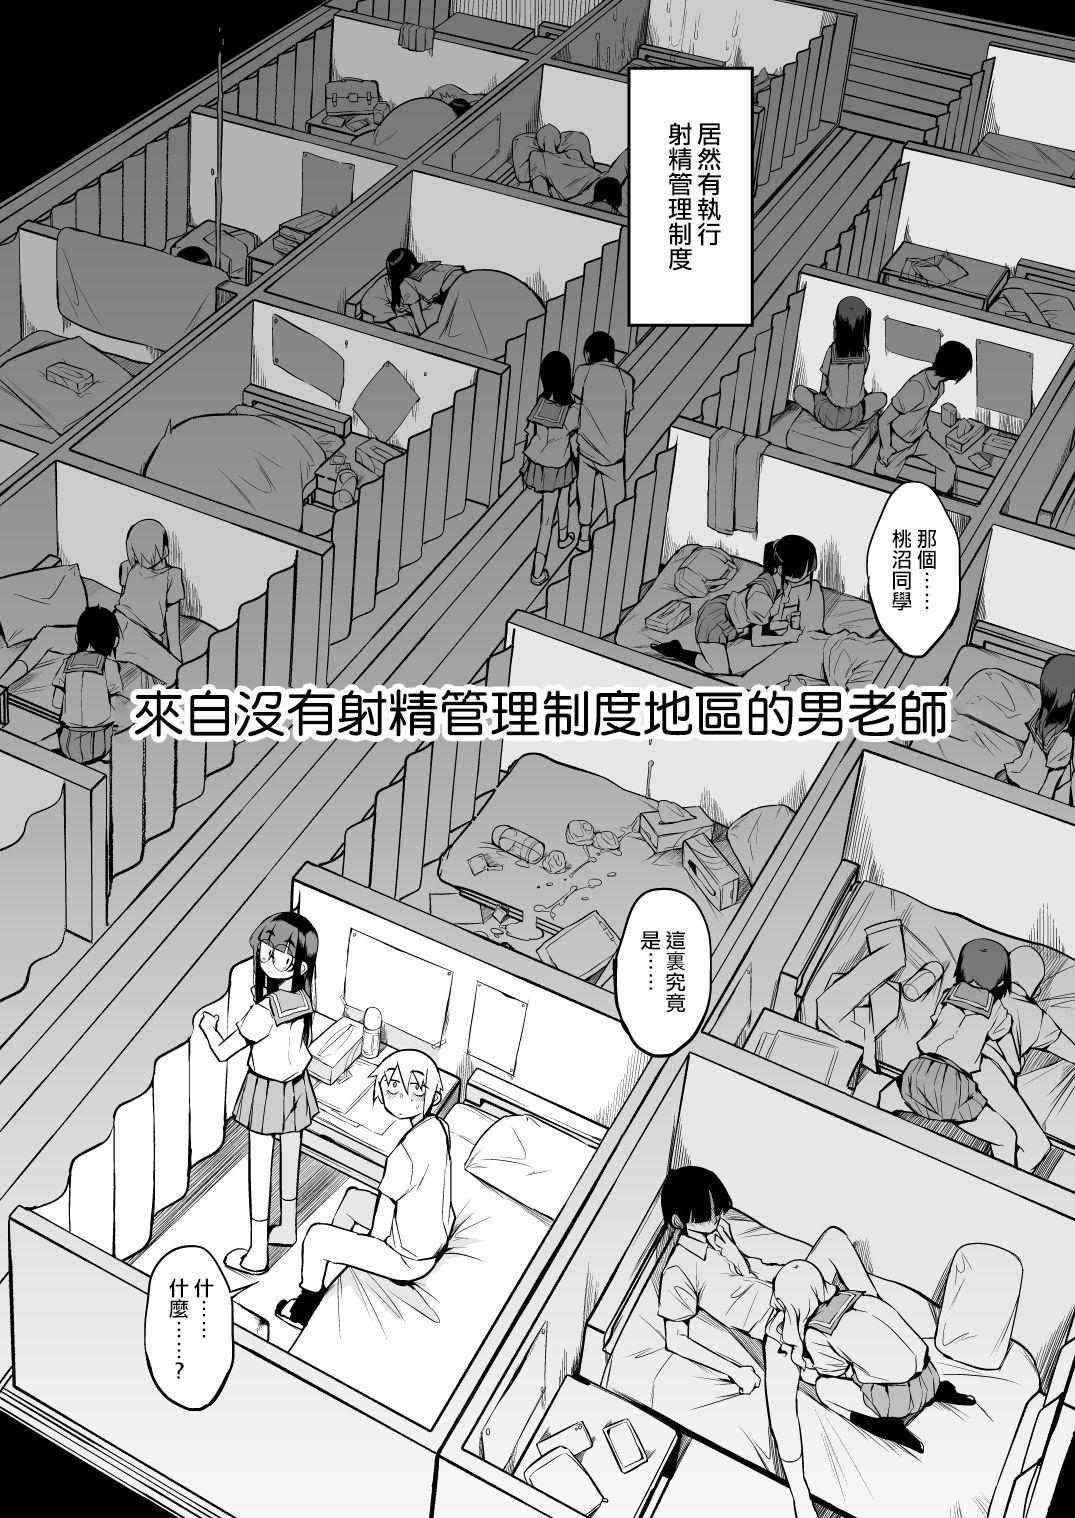 Eating Shasei Kanri Seido no Nai Ken kara Kita Otoko no Sensei 丨來自沒有射精管理制度地區的男老師 - Original Double Blowjob - Page 6